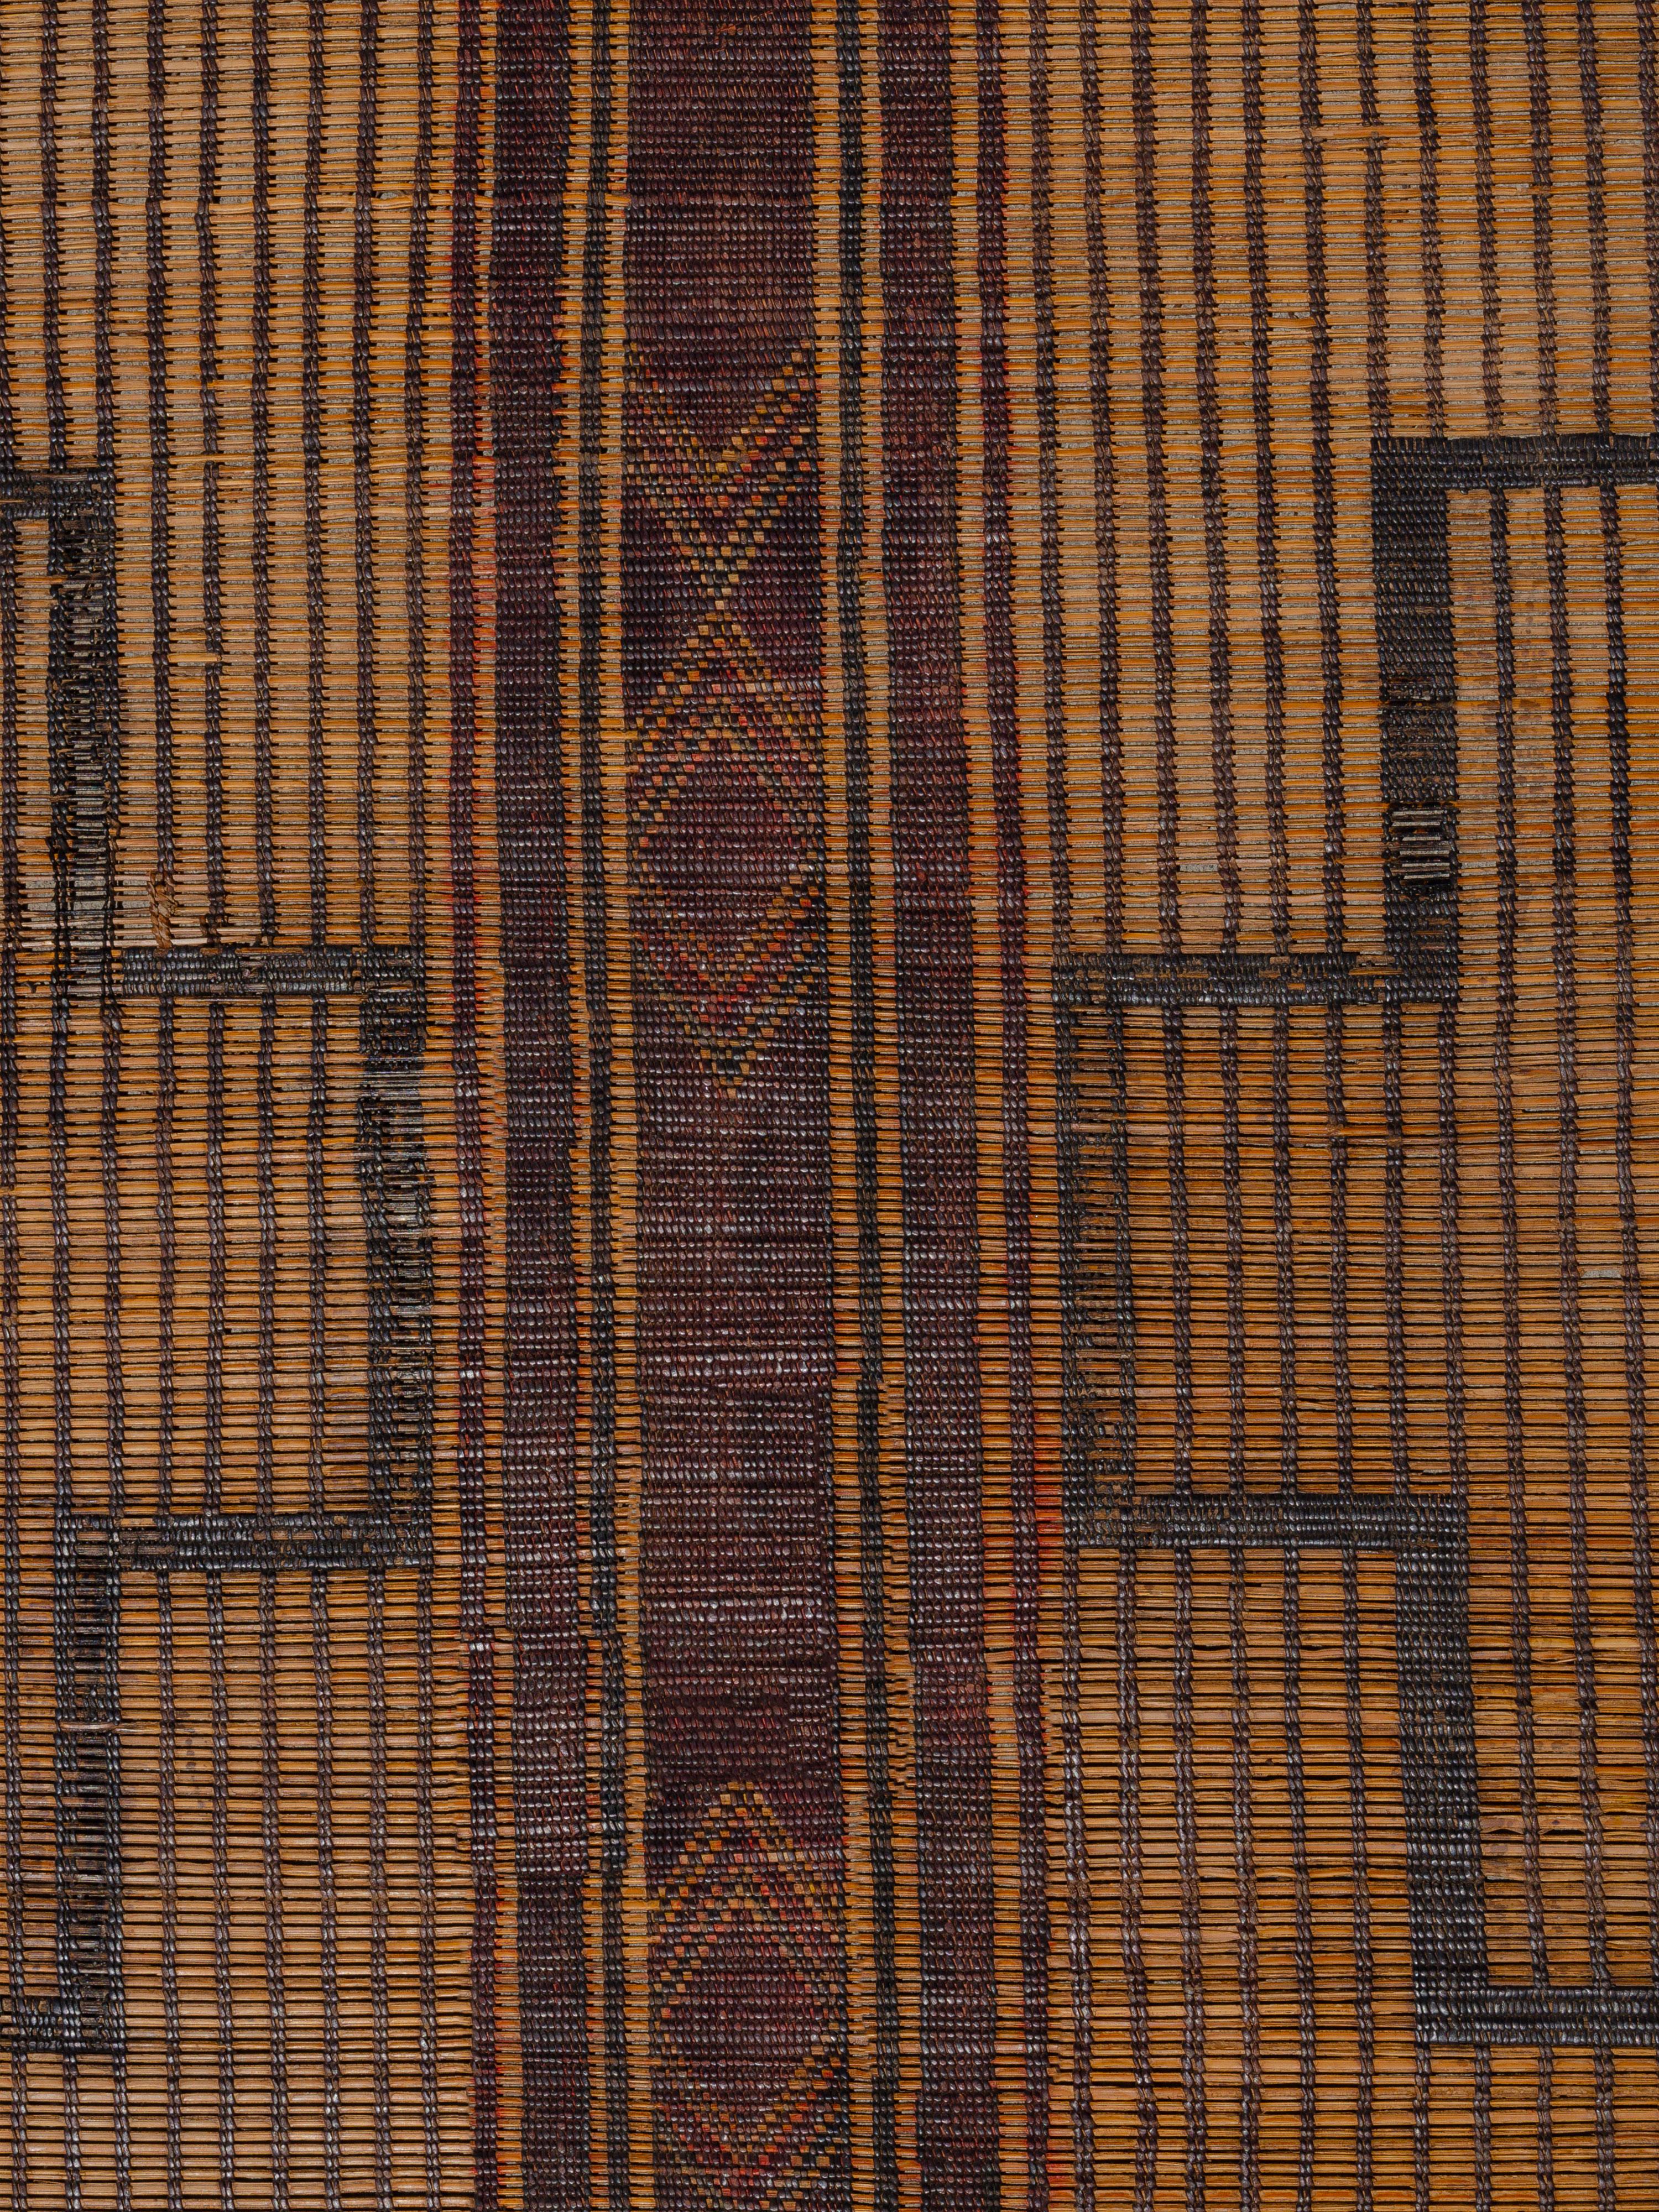 Diese von den nomadischen Tuareg-Stämmen Mauretaniens aus Palmschilf und Leder gewebten Matten bieten eine strukturelle Alternative zu den traditionellen gewebten Textilbodenbelägen. Dieses Stück weist eine recht symmetrische Komposition aus